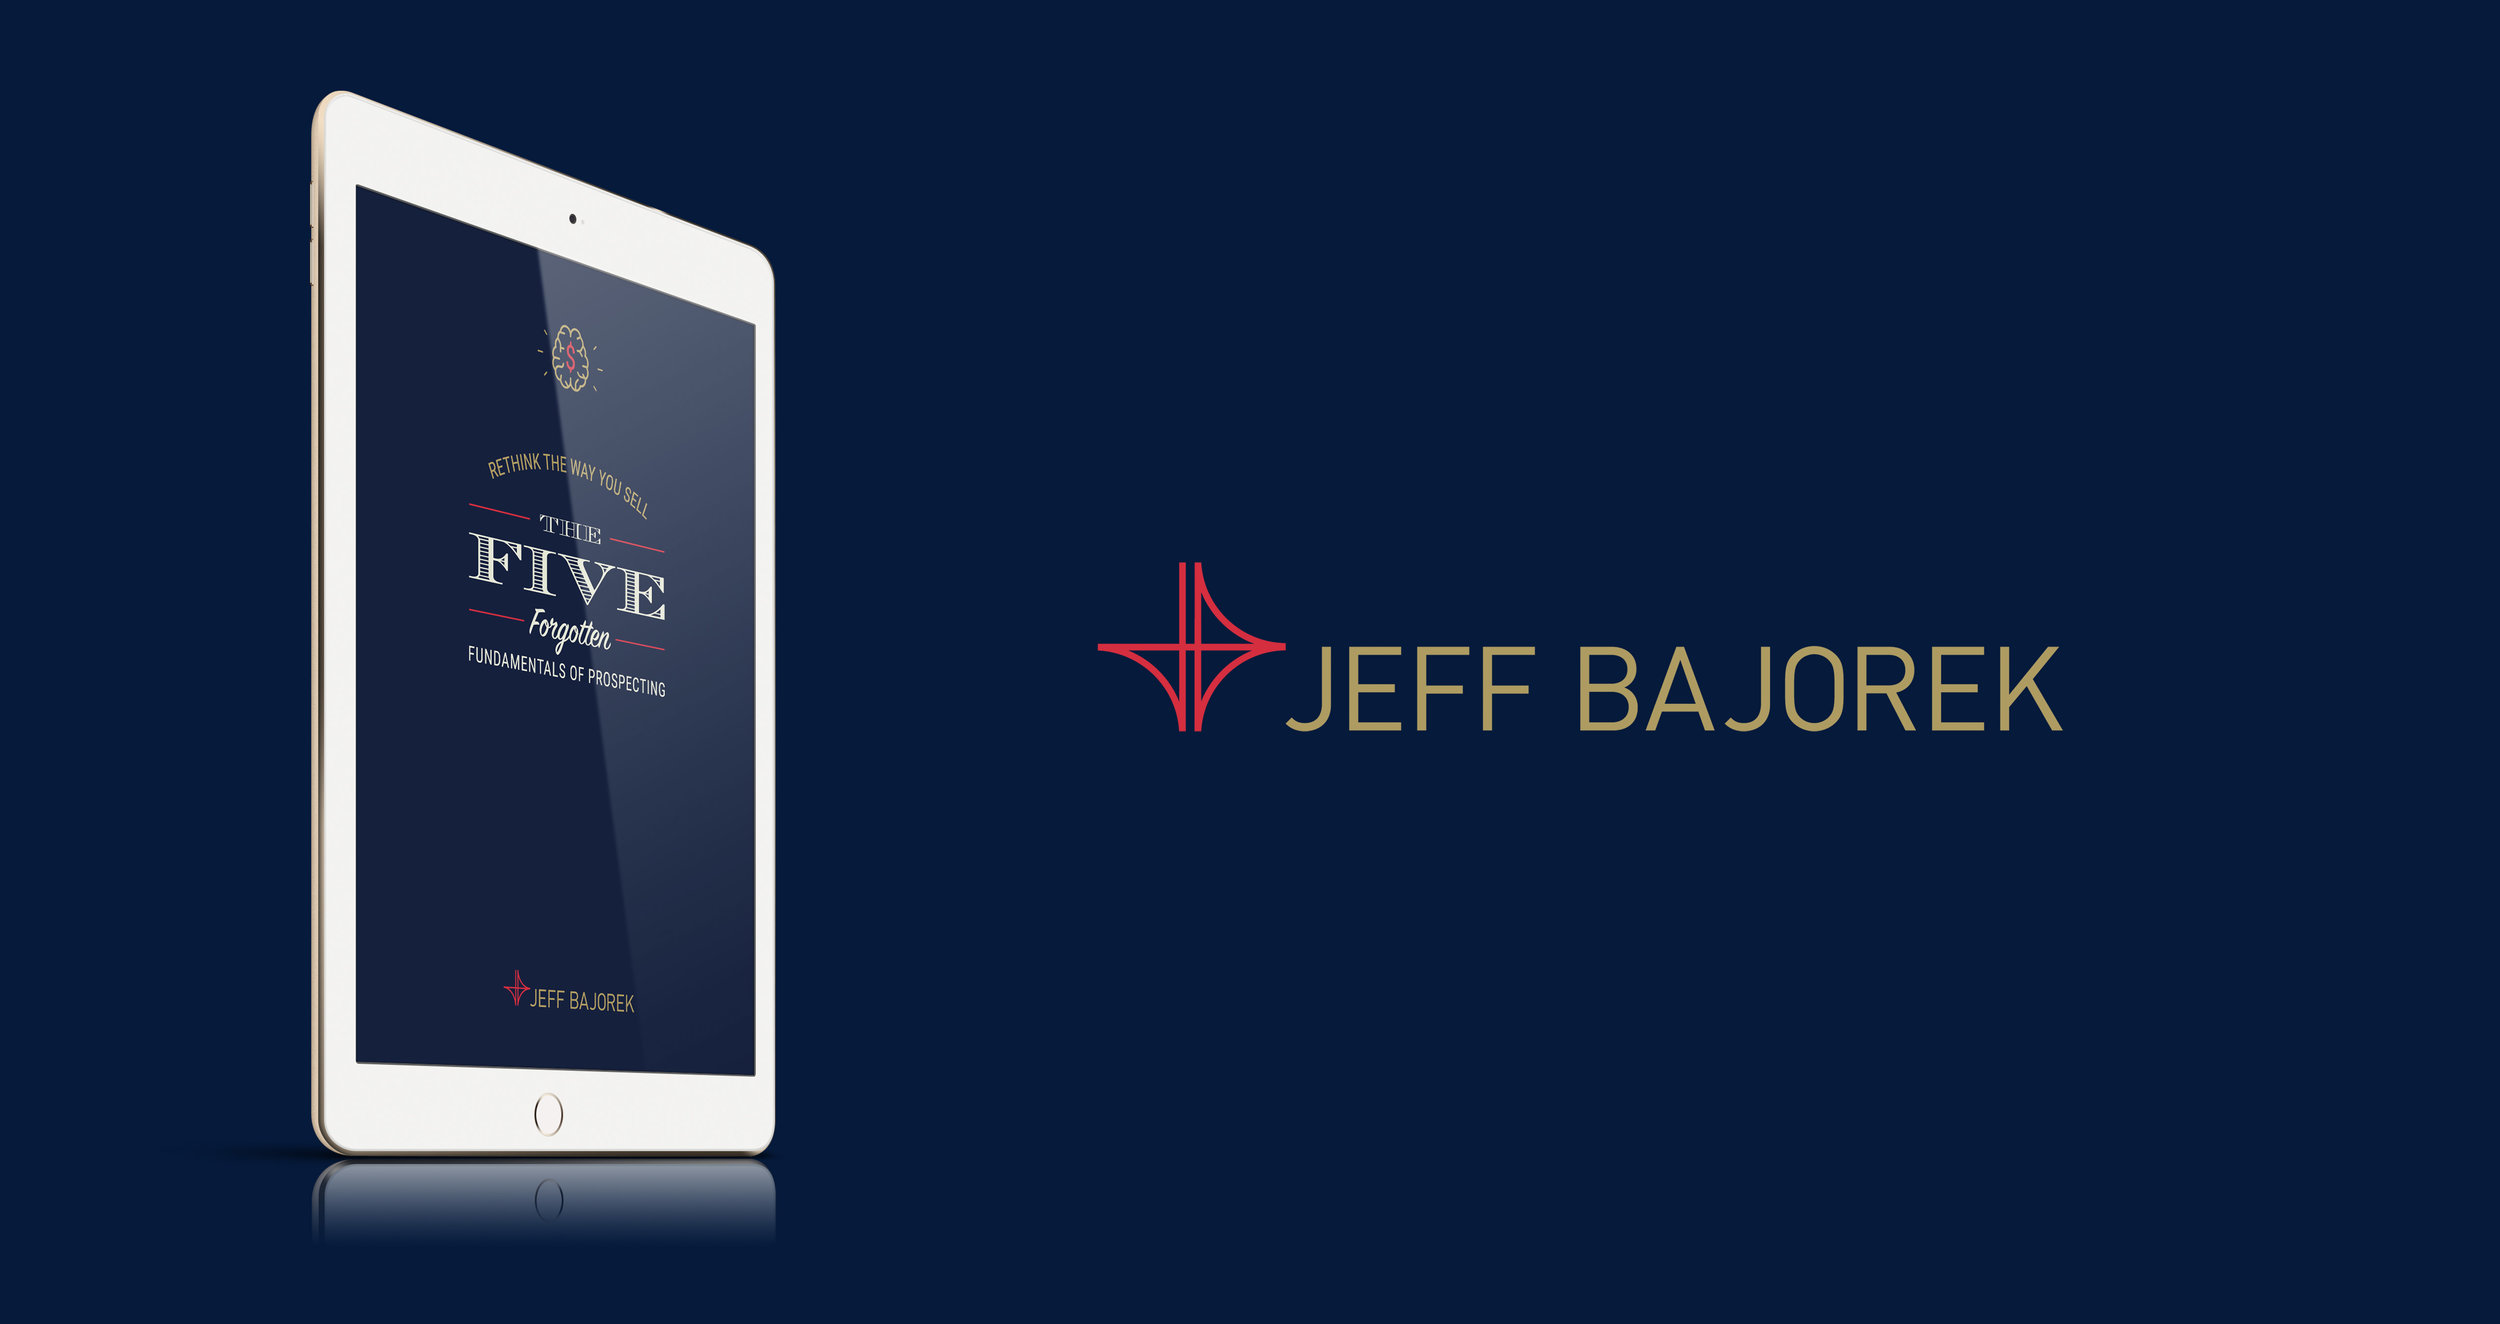 JeffBajorek_Amazon-Book-3.jpg